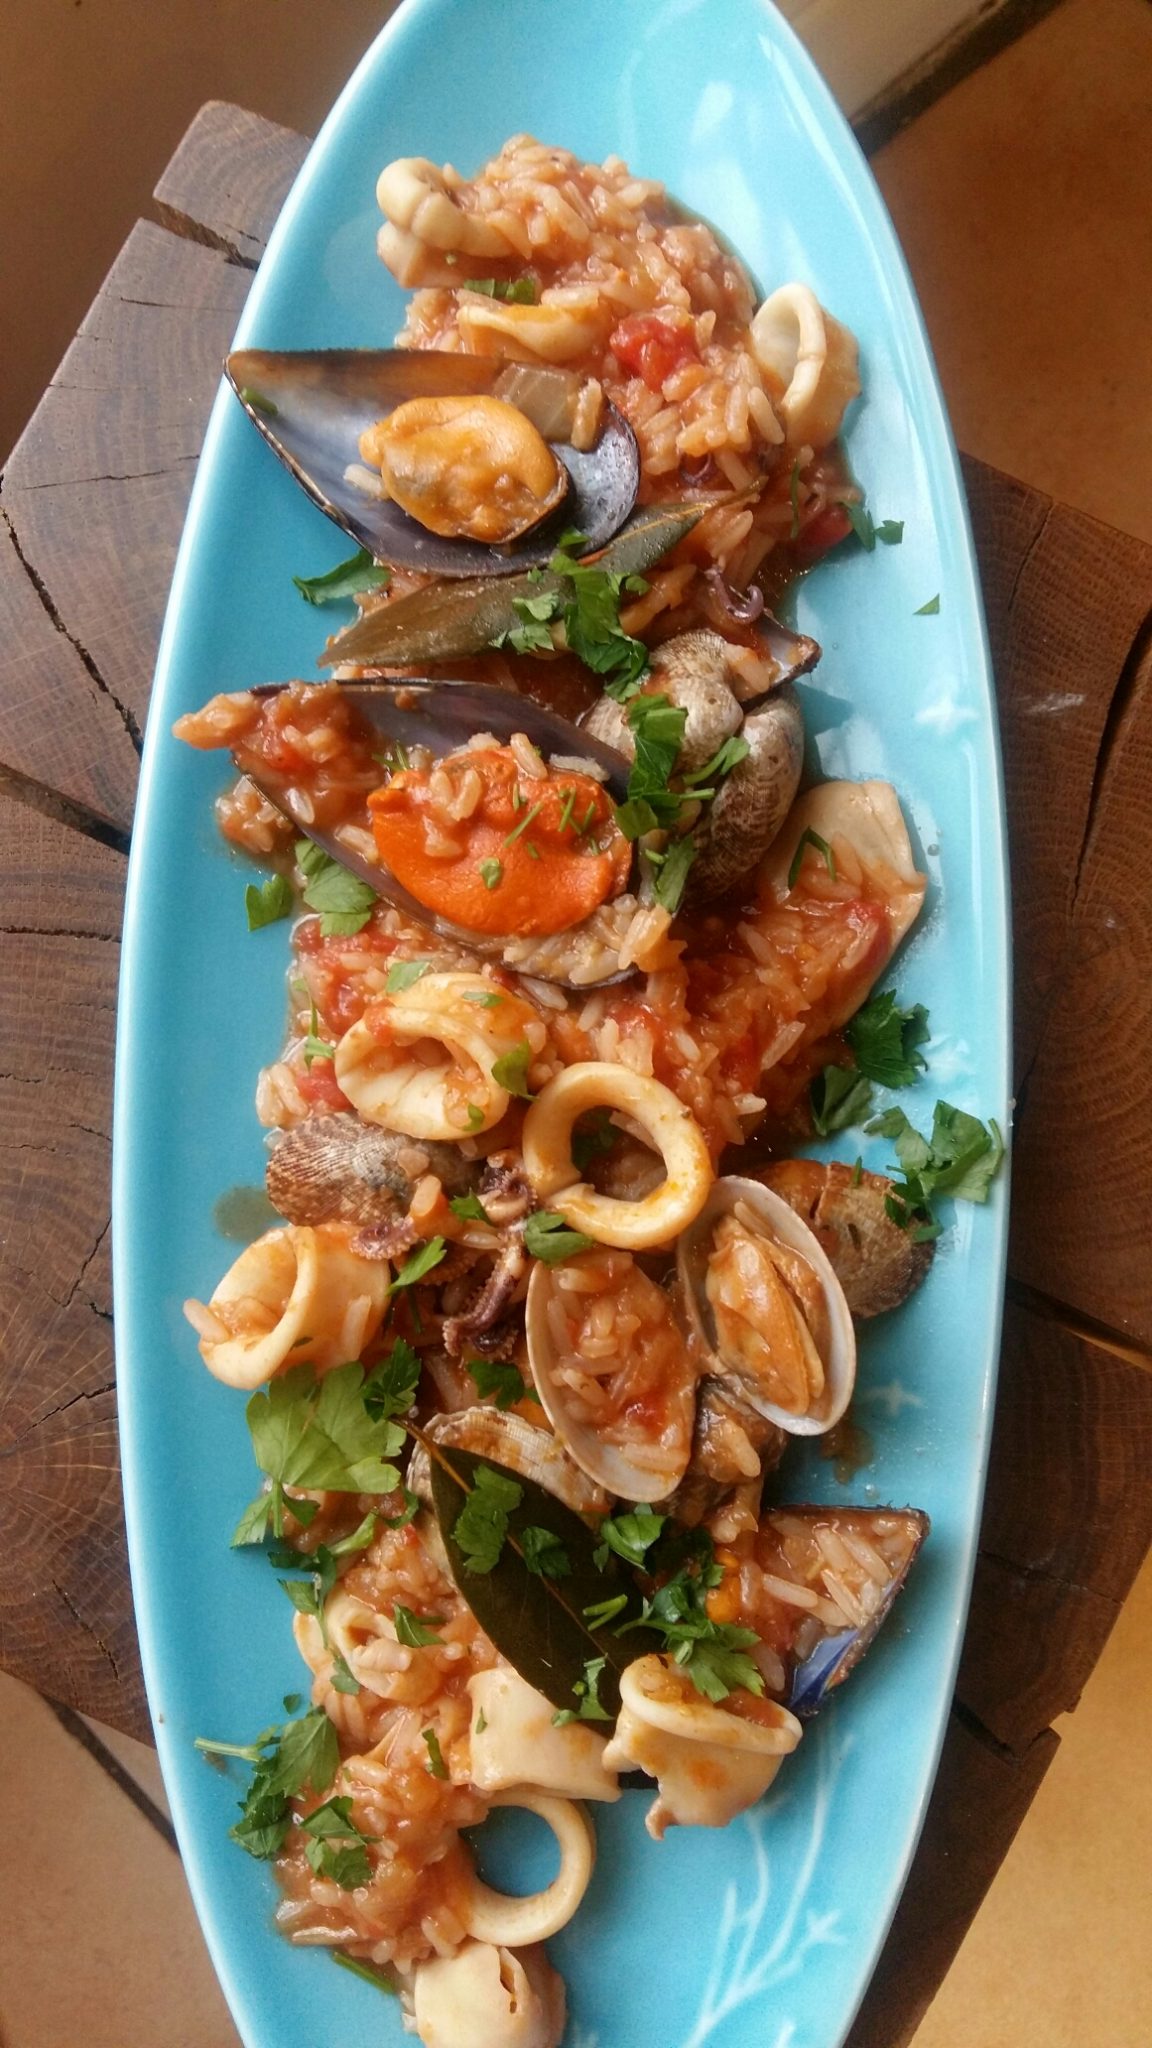 Arroz de Mariscos - easy Portuguese seafood rice